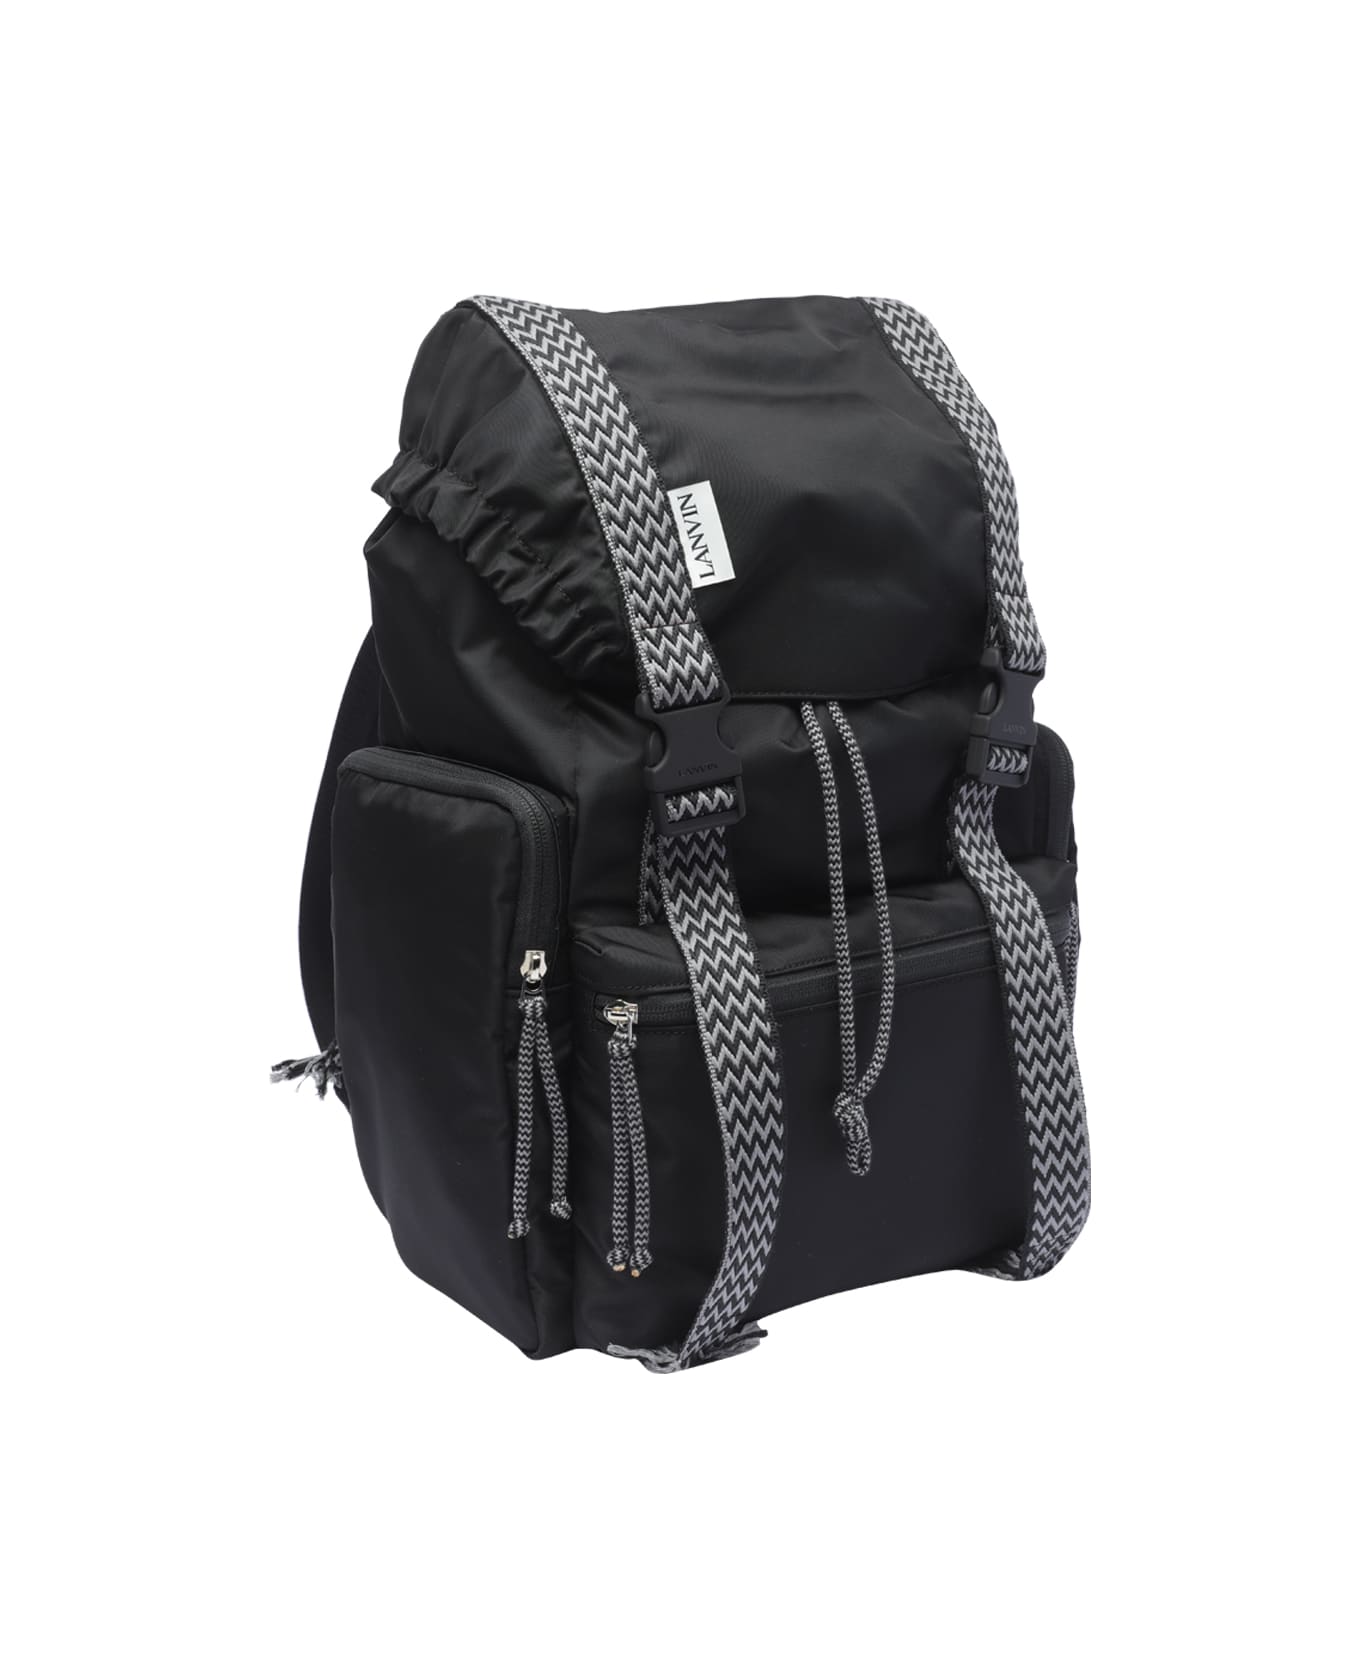 Lanvin Curb Backpack - Black